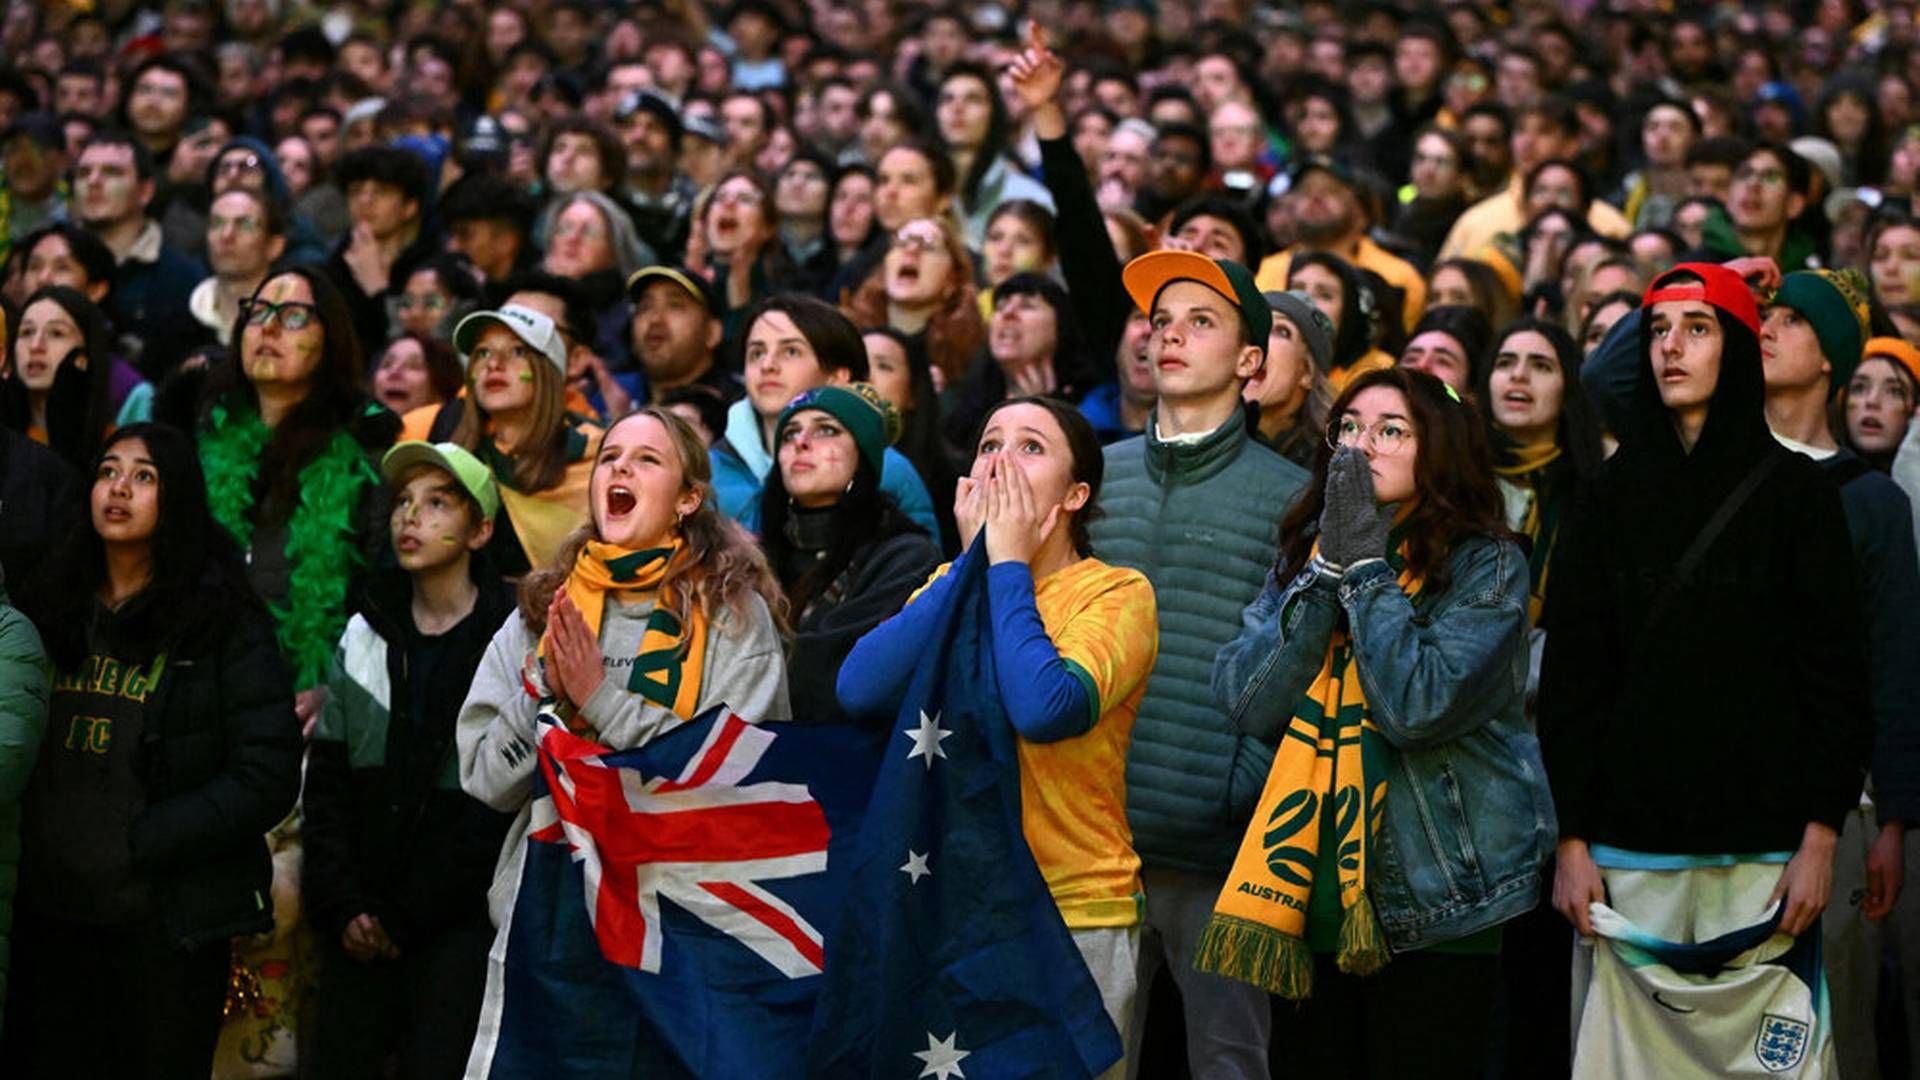 Federation Square i storbyen Melbourne var onsdag aften tætpakket, da Australien mødte England i VM-semifinalen onsdag. | Foto: Aap Aap/Reuters